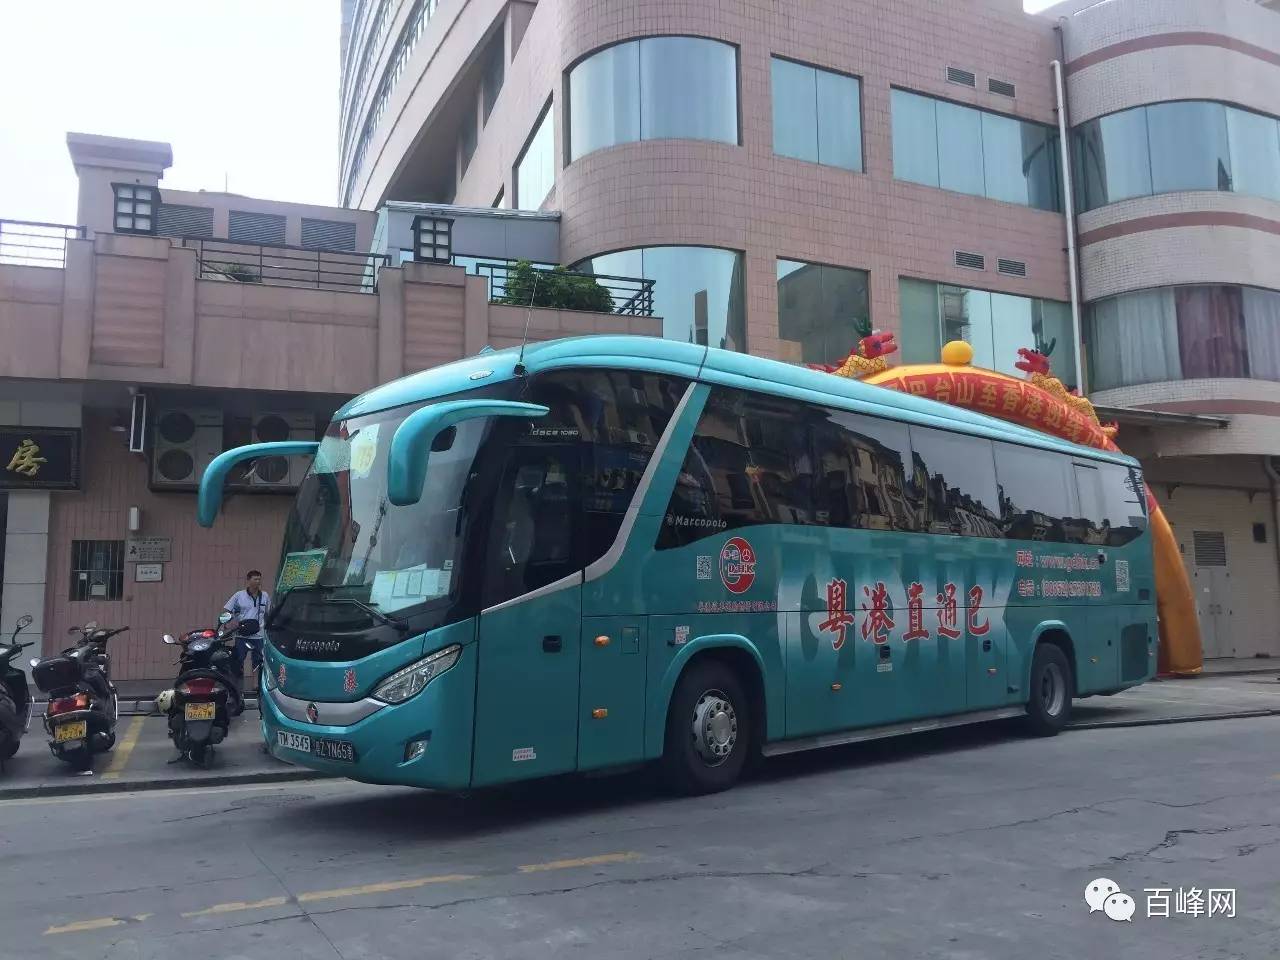 【好消息】市民去香港又有新选择 每天新增5班台山往返香港直达班车!